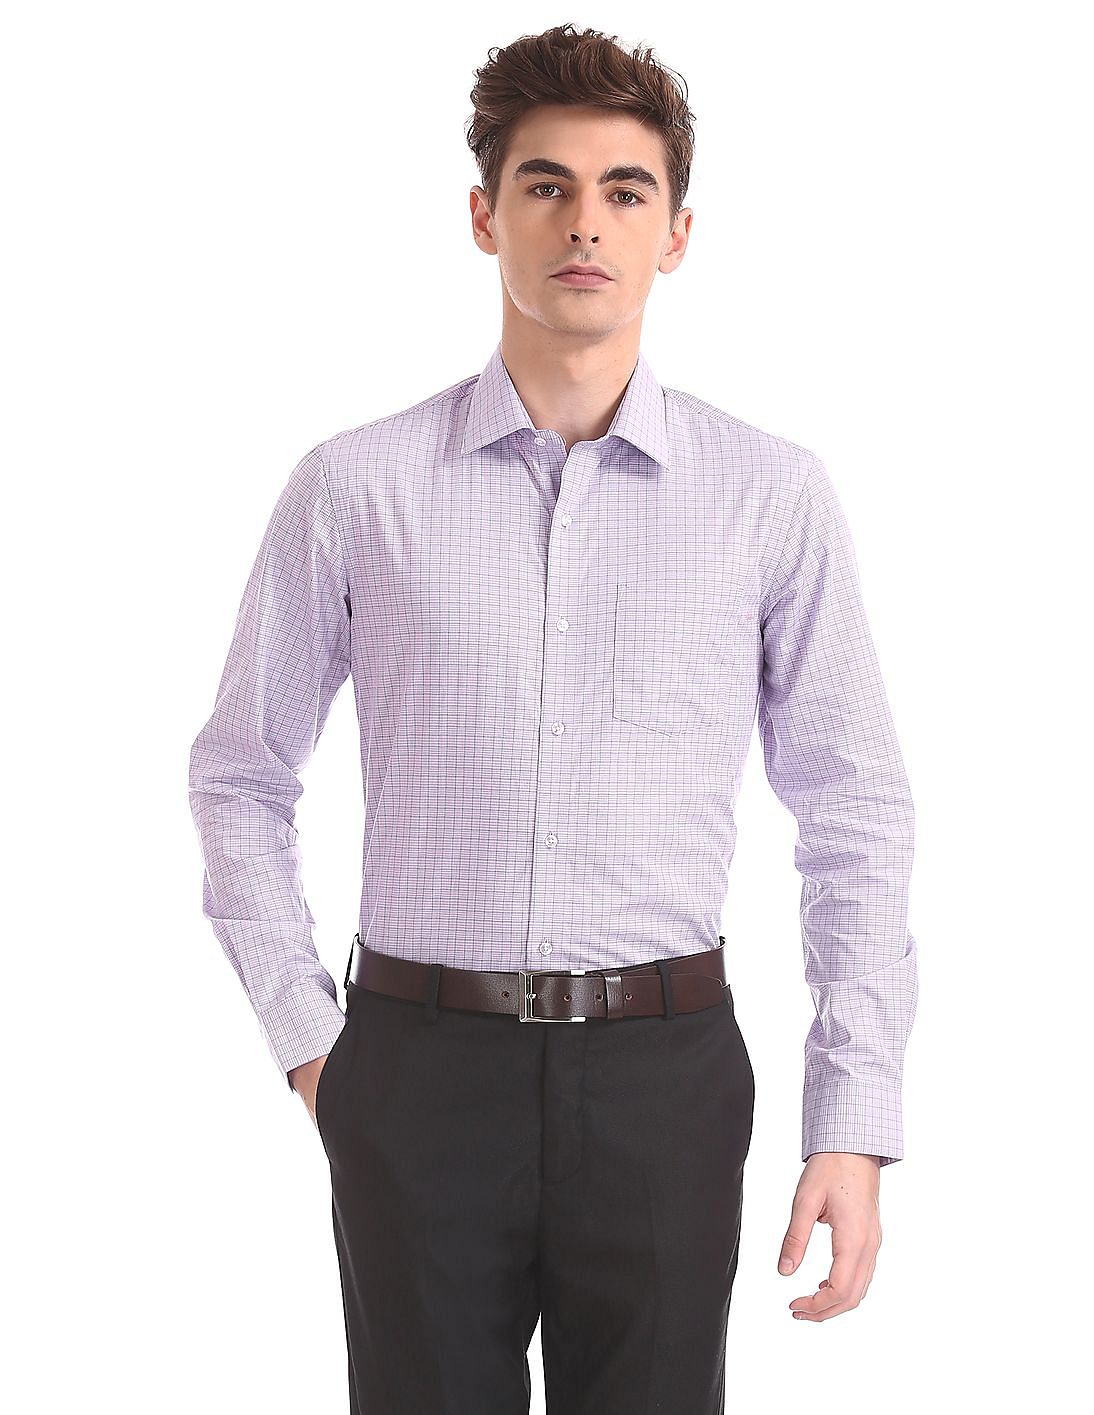 Buy Arrow Slim Fit Cutaway Collar Shirt - NNNOW.com